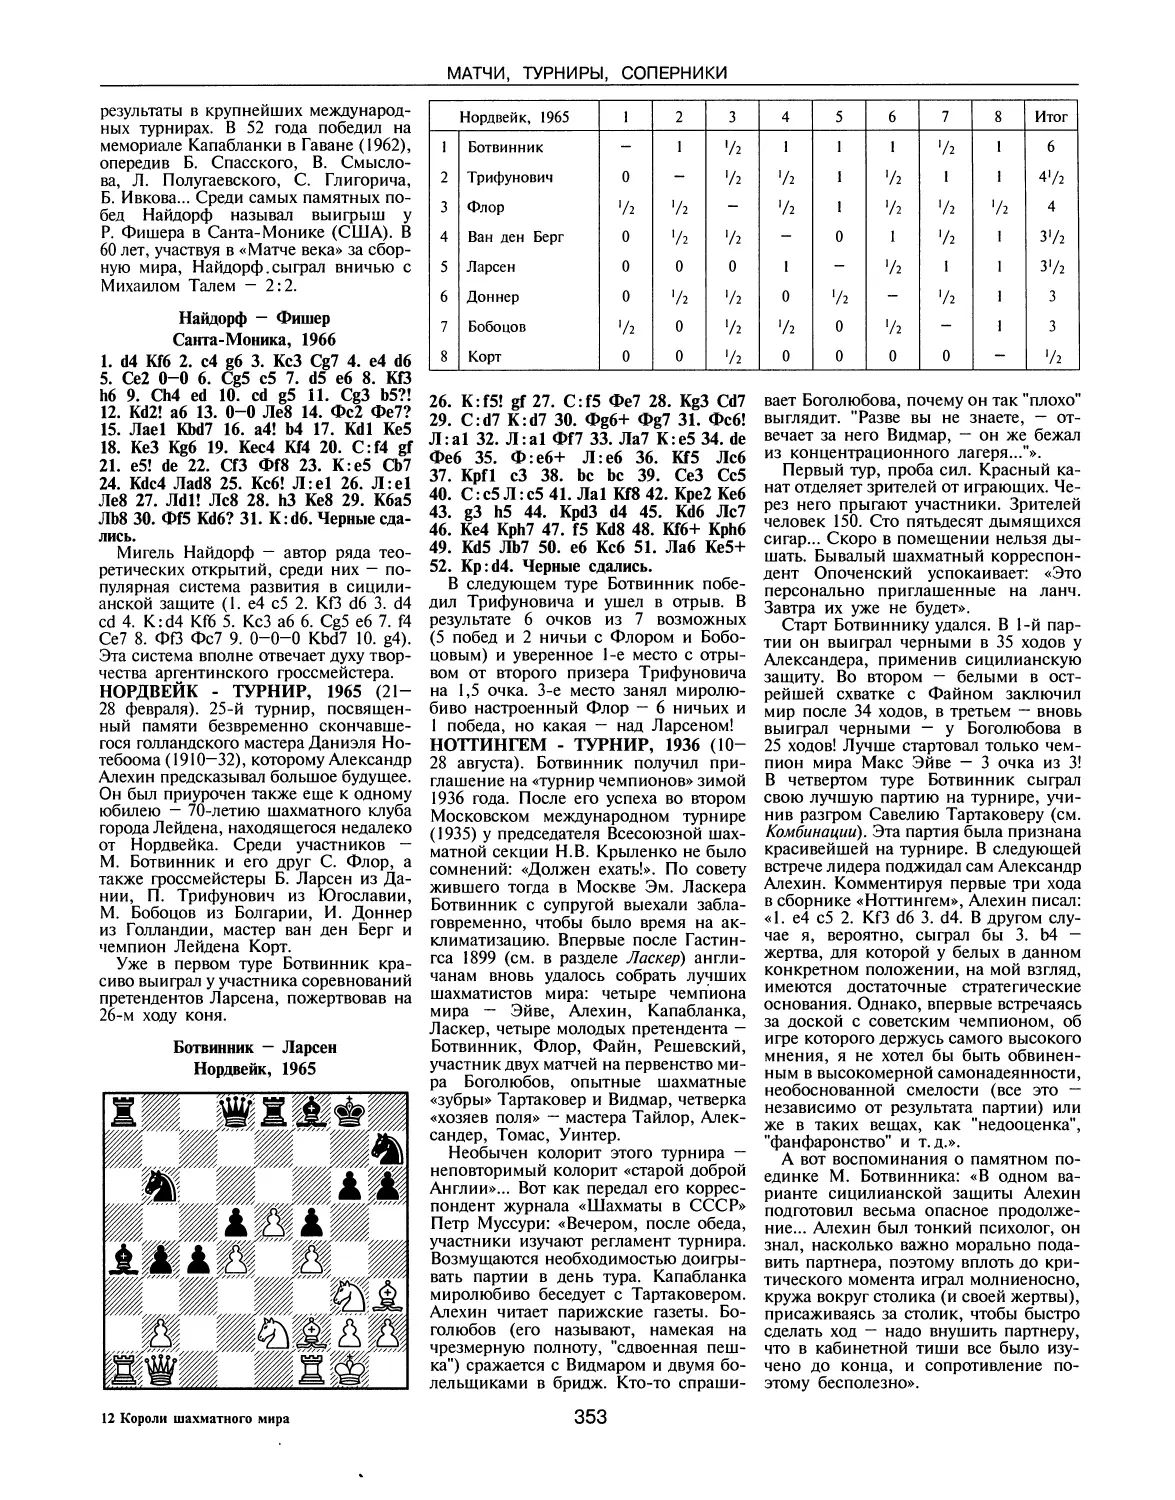 Нордвейк-турнир, 1965
Ноттингем-турнир, 1936